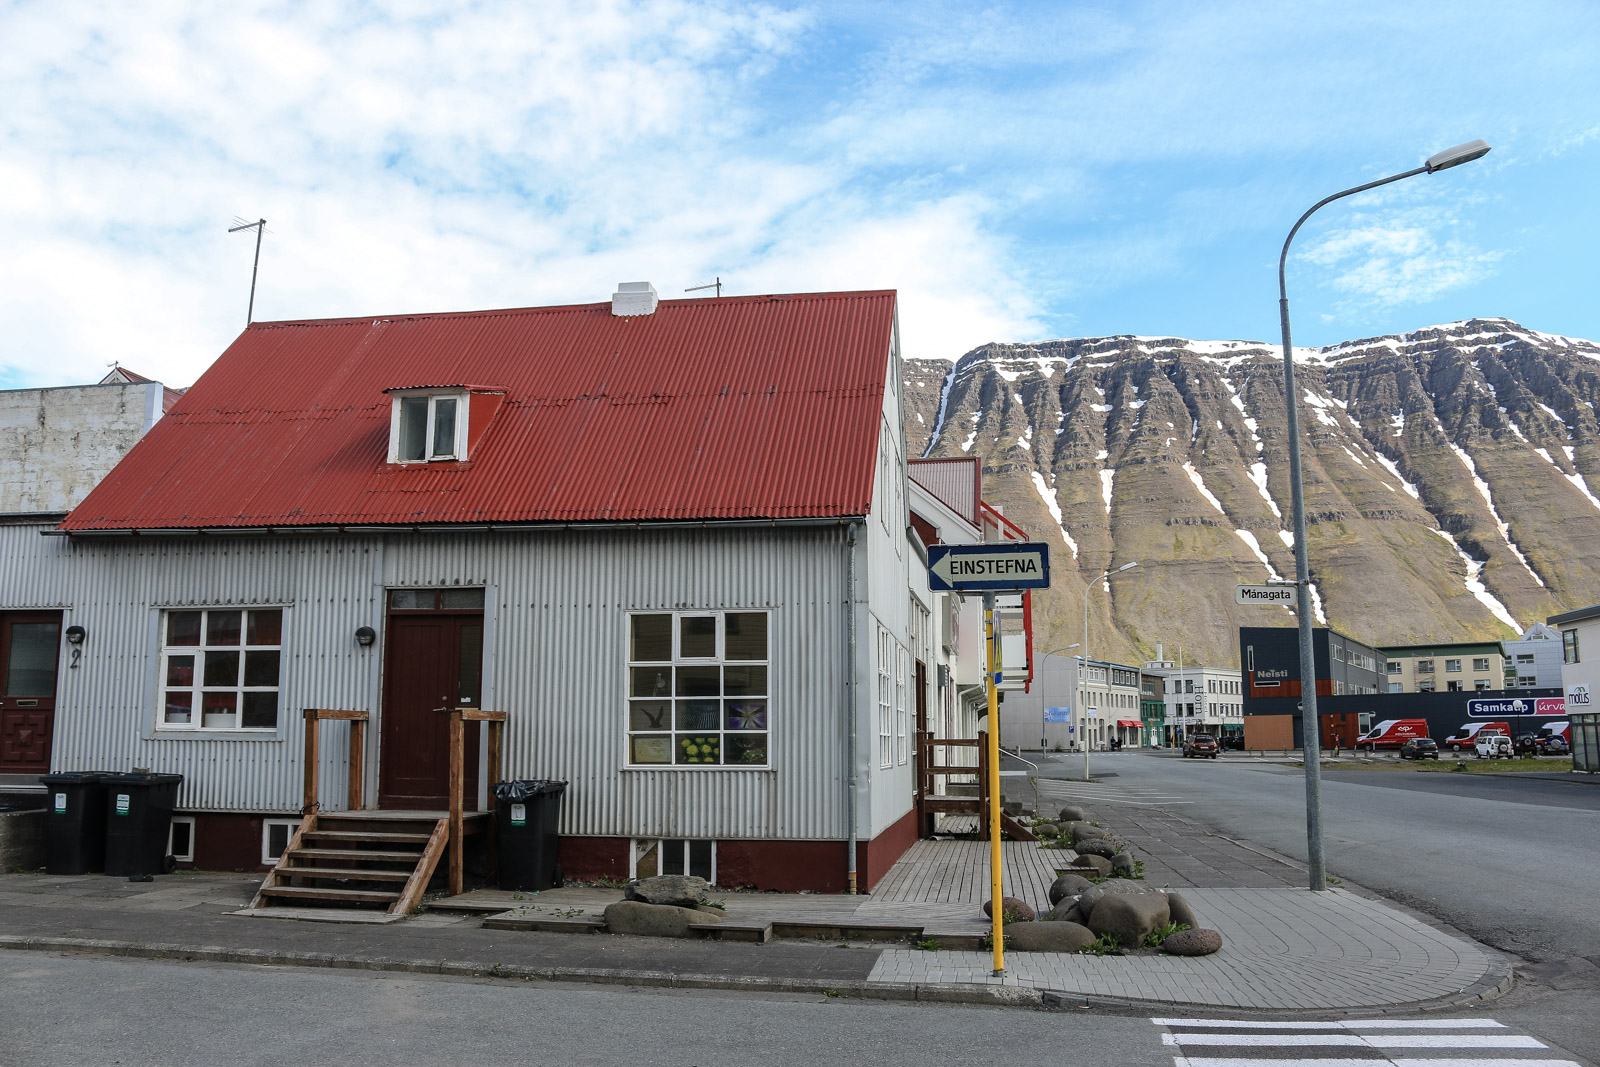 Ísafjörður wirkte trotz seiner vergleichsweise kleinen Größe von rund 5000 Einwohnern sehr kosmopolitisch.